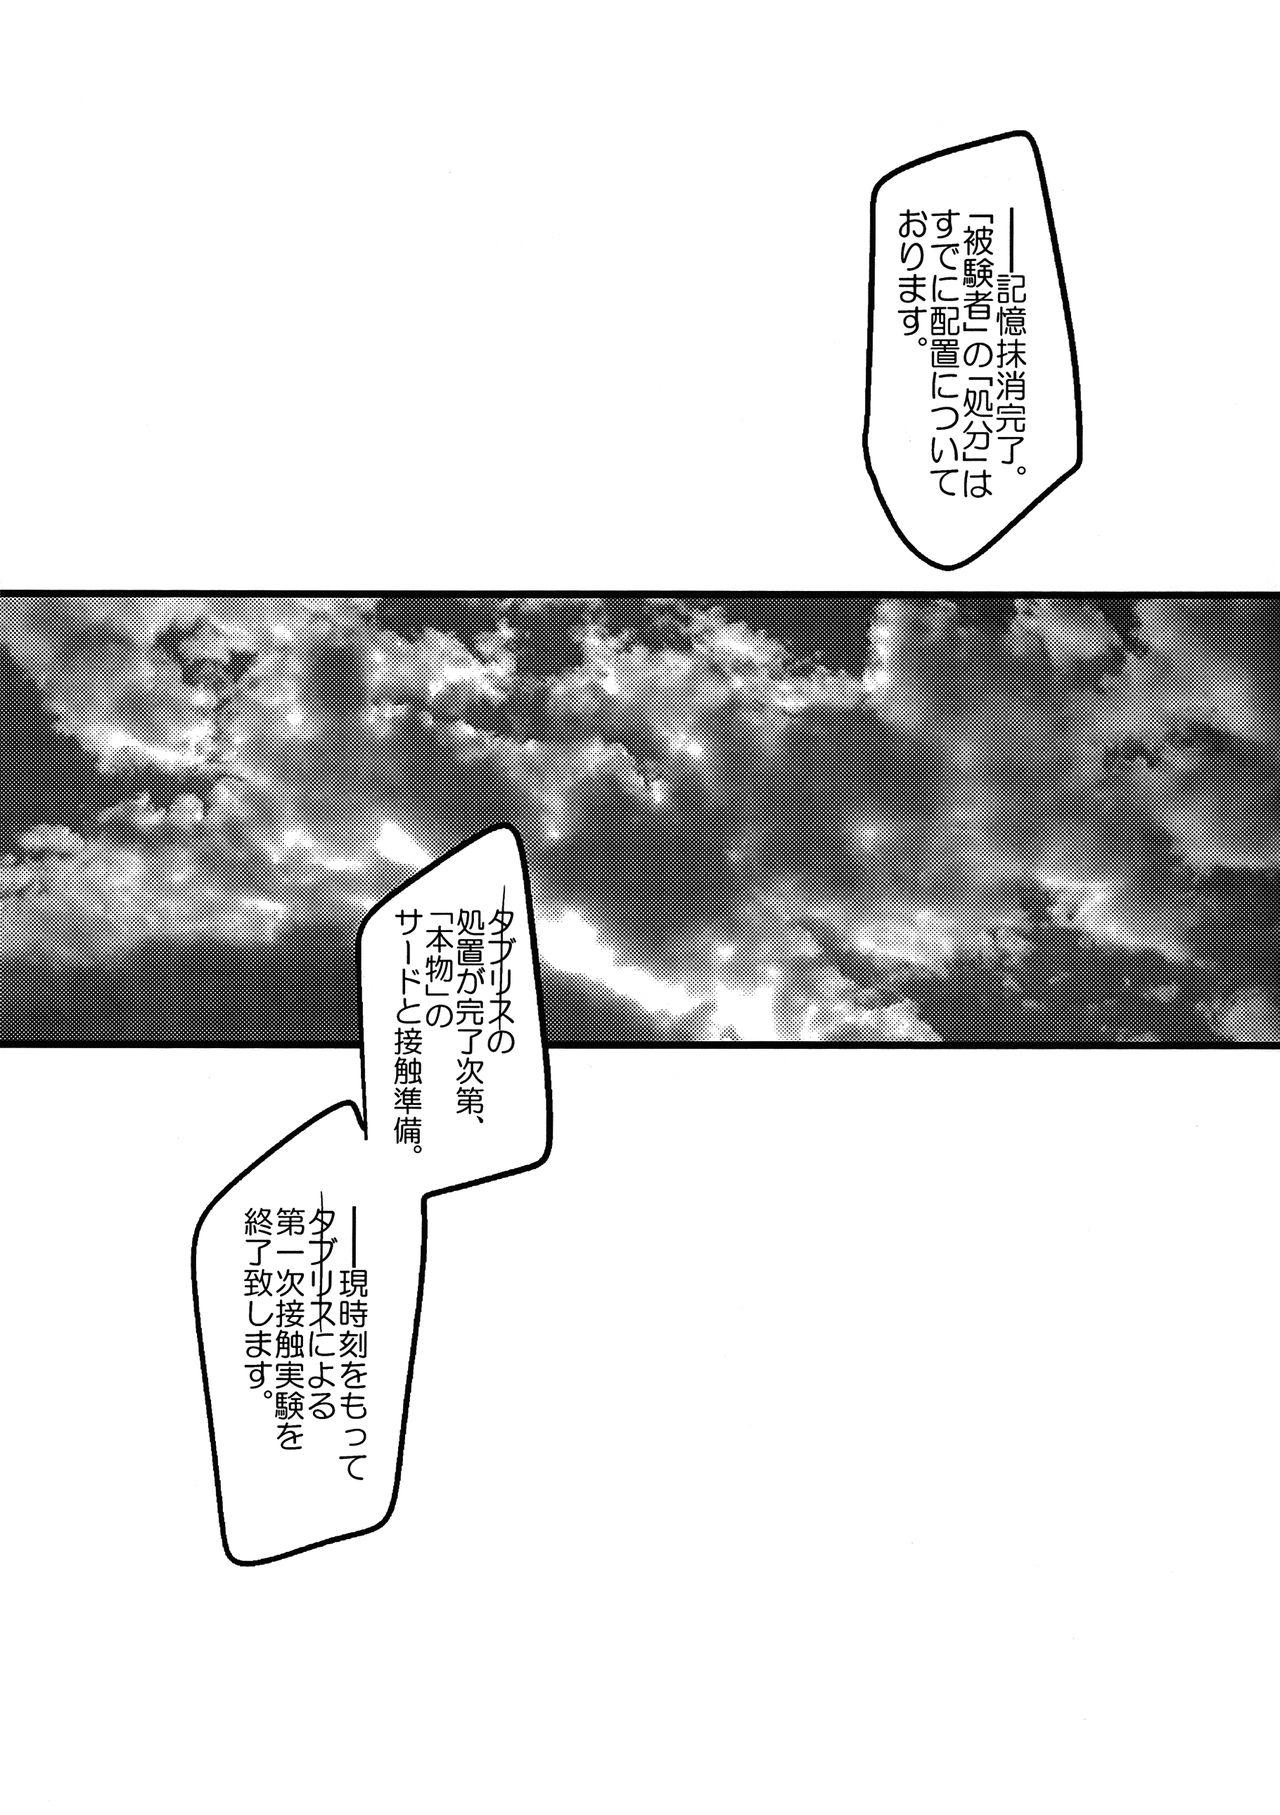 Handjobs Ore no Koto o Ikari Shinji da to Omoikomu Saimin ni Kakatta Nagisa Kaworu-kun wa Mechamecha Yasashii - Neon genesis evangelion Gag - Page 11